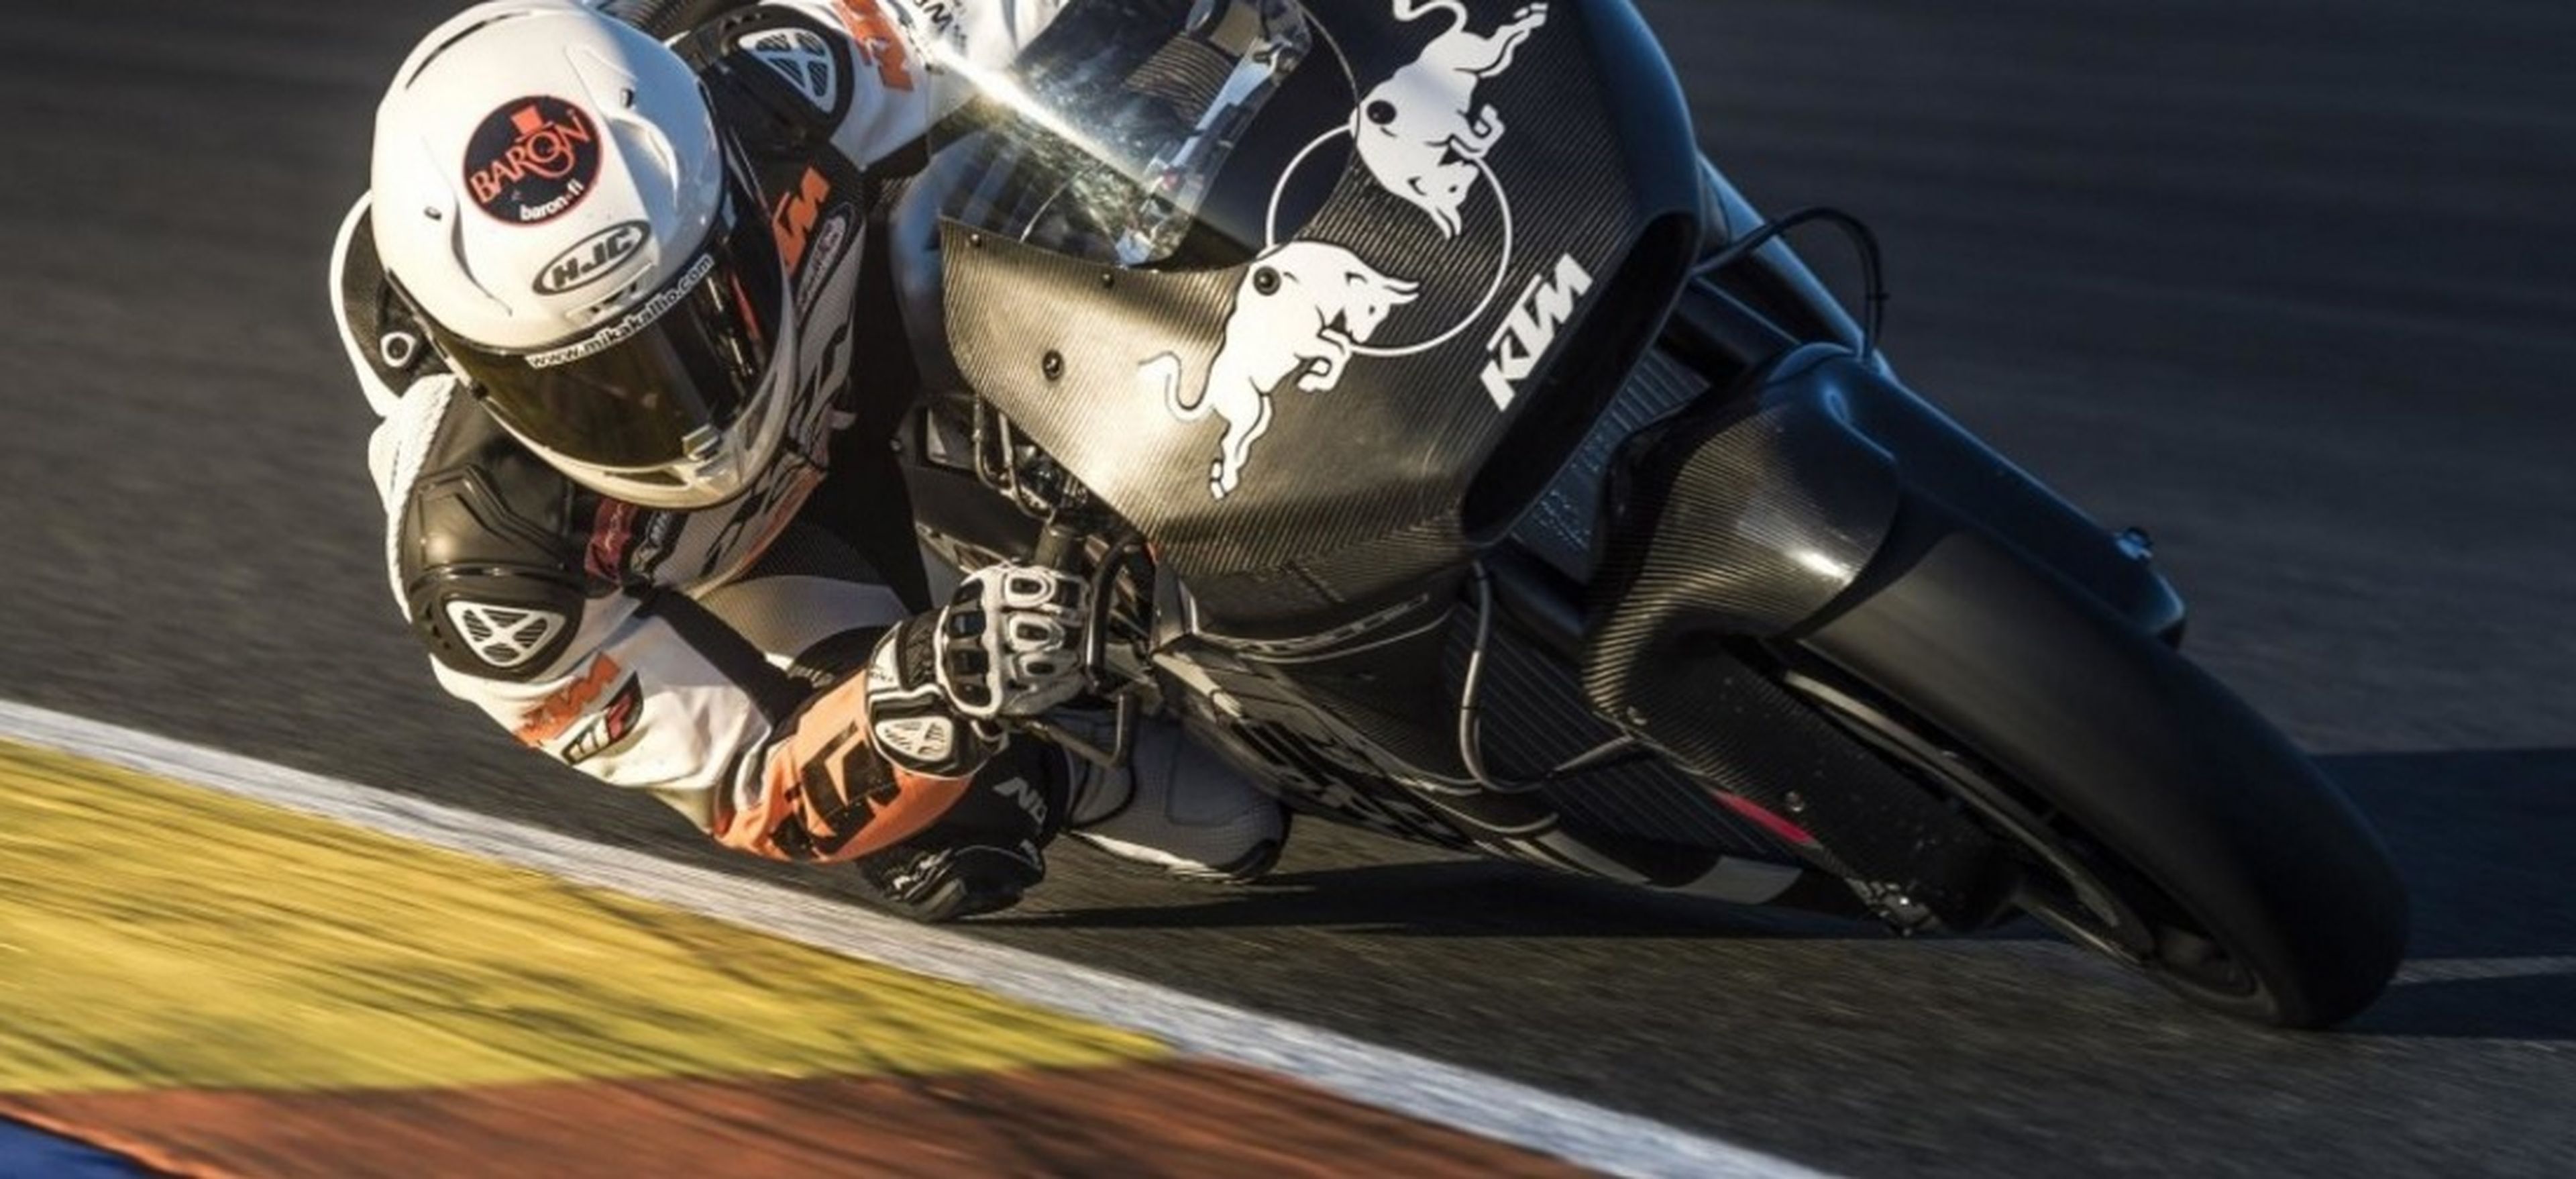 KTM continúa con la preparación de su RC16 de MotoGP